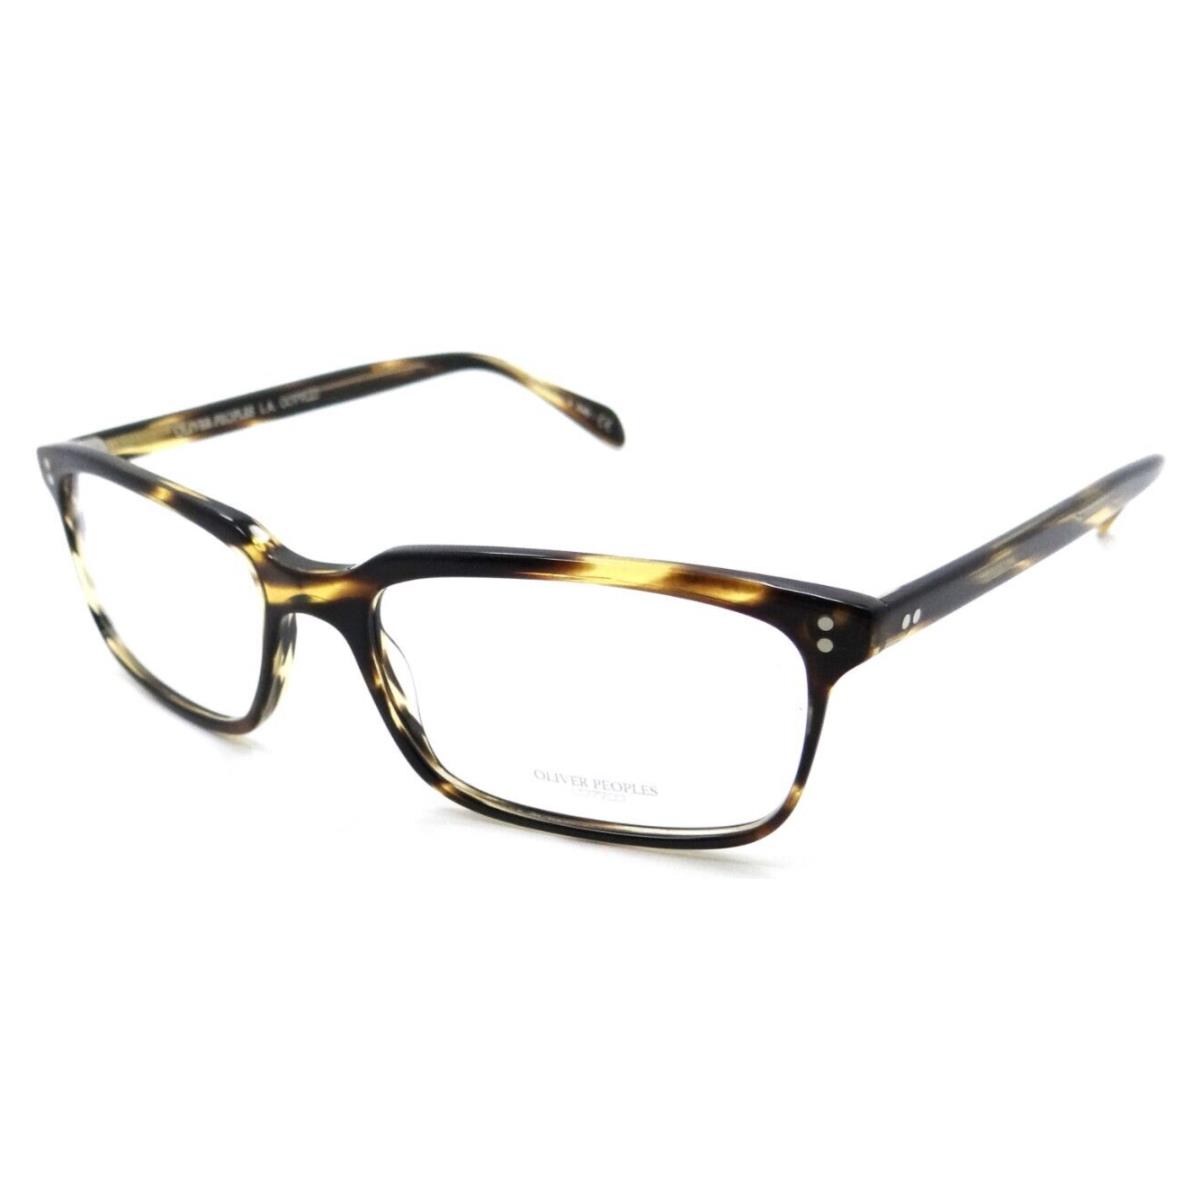 Oliver Peoples Eyeglasses Frames OV 5102 1003 56-17-150 Denison Cocobolo Italy - Frame: